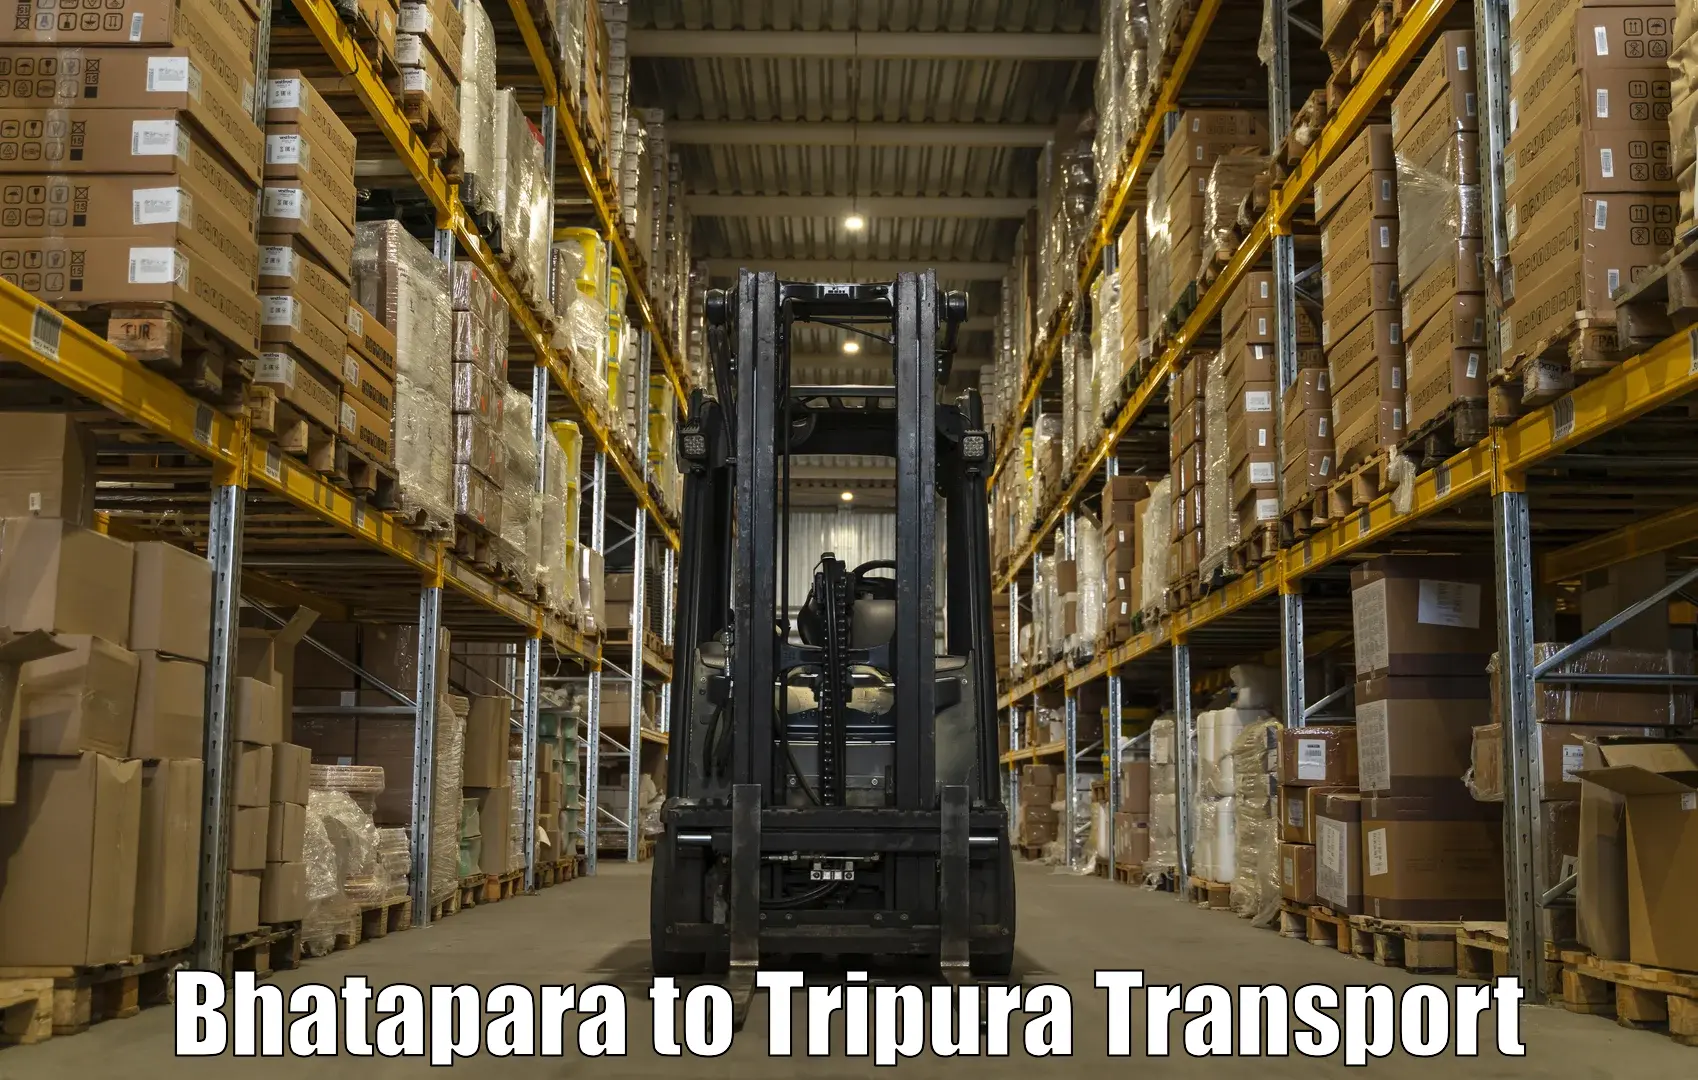 Truck transport companies in India Bhatapara to Sonamura